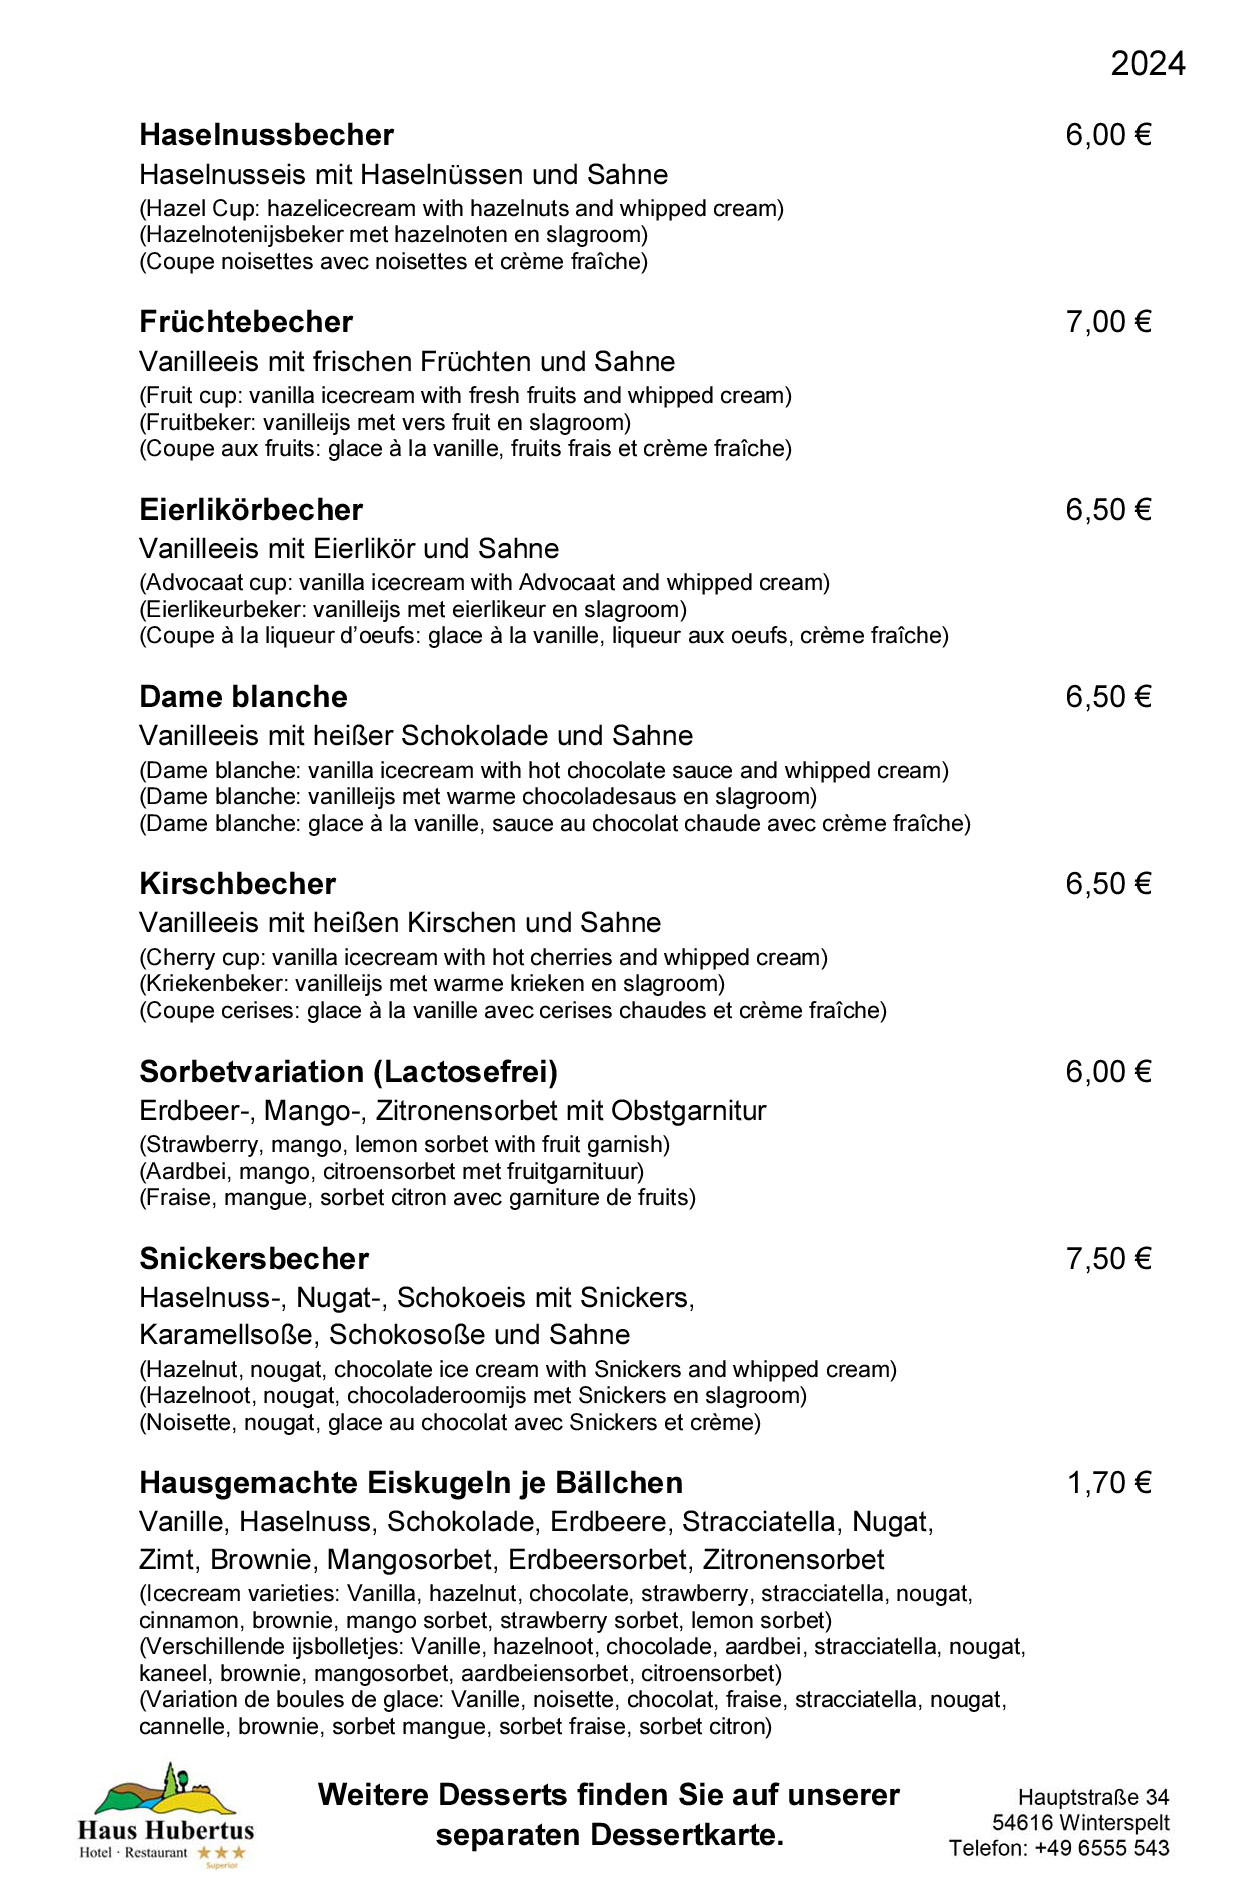 Hotel - Restaurant Haus Hubertus - Speisekarte 01/2024 - Die Klassiker - Seite 4